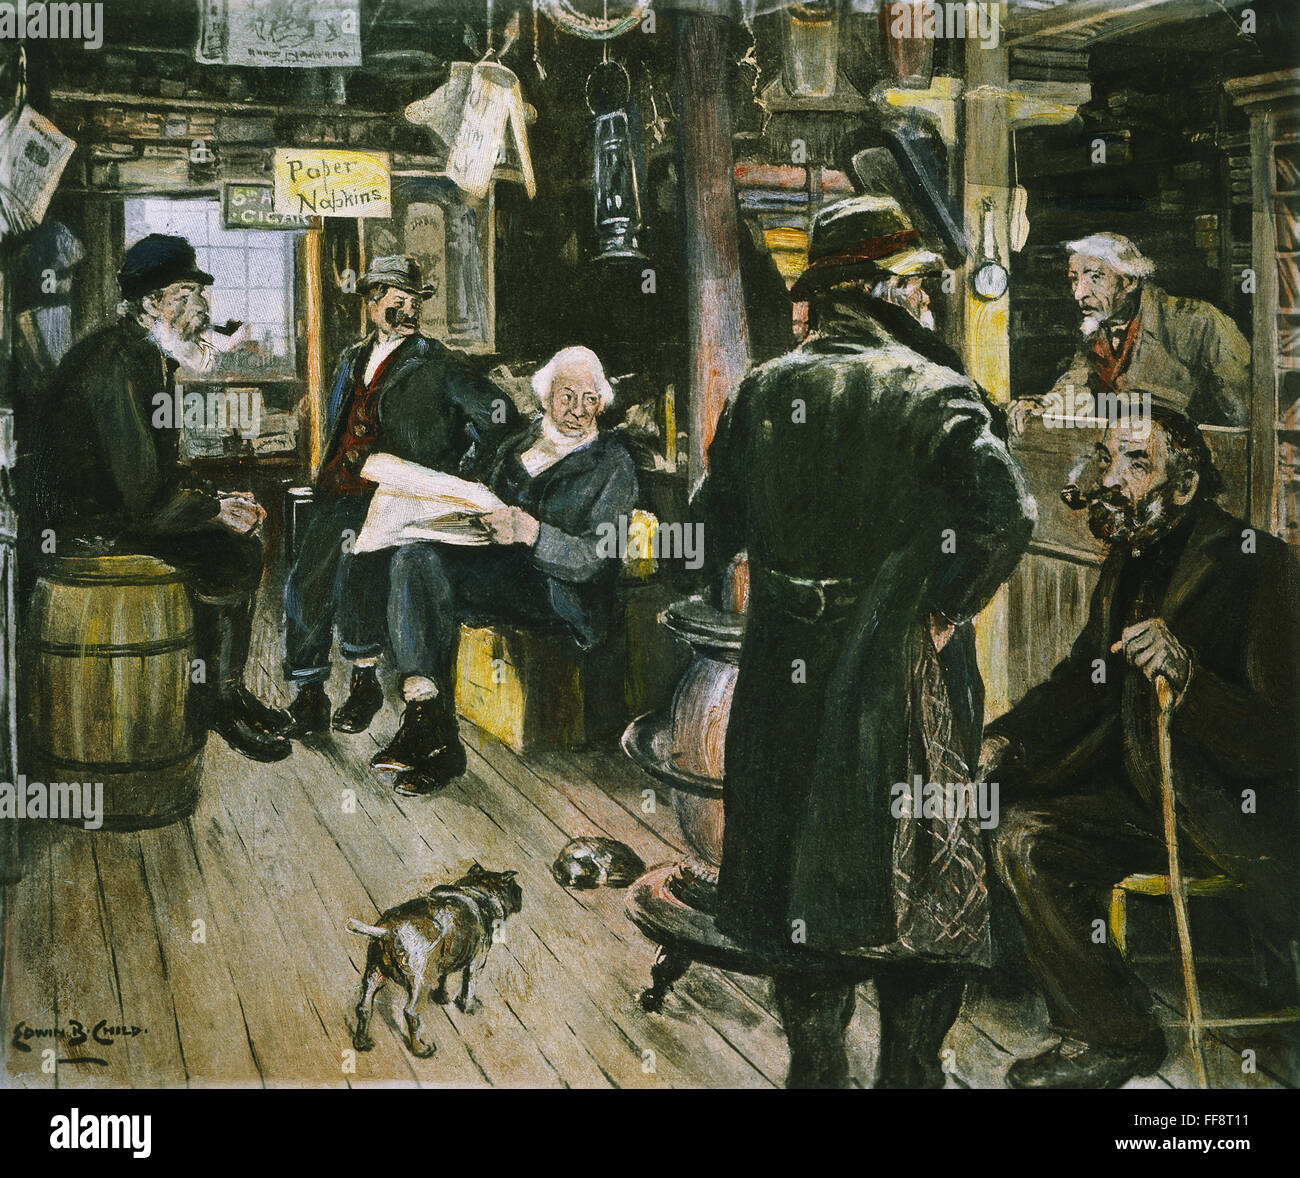 DORFLADEN. NUM 19. Jahrhundert amerikanische Country Store Interieur. Illustration von Edwin B. Child (1868-1937). Stockfoto